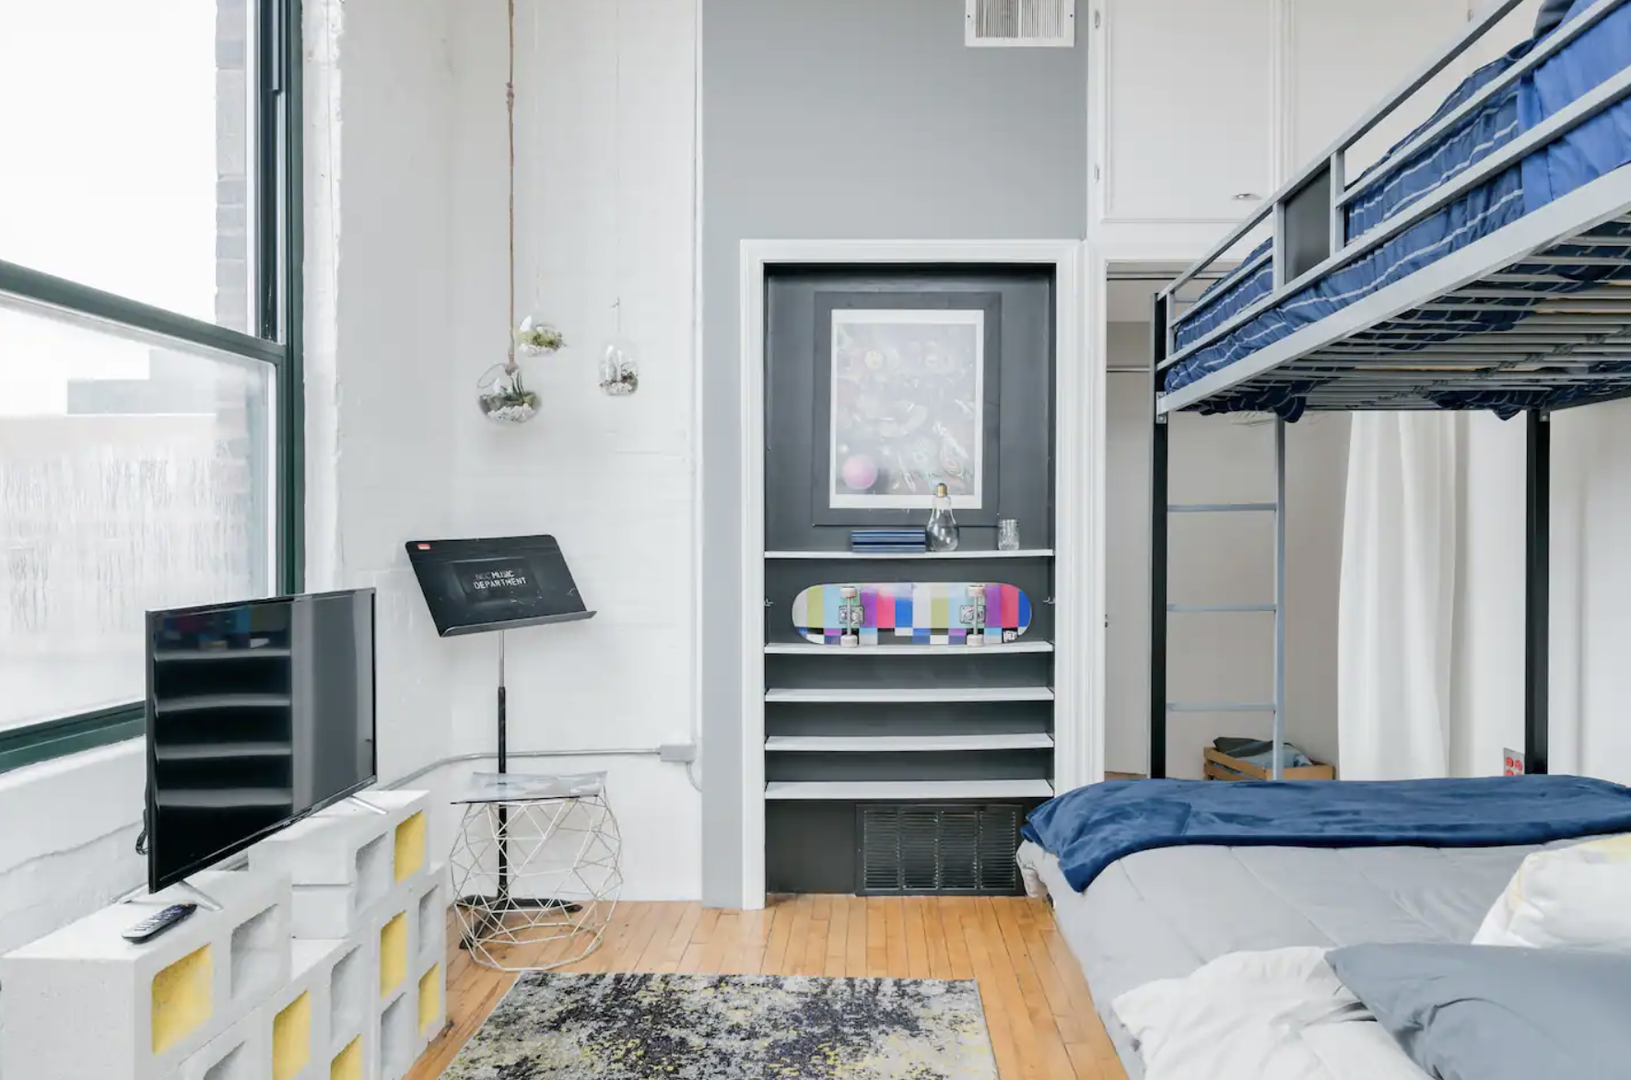 Bedroom 2 - Queen bed  · Bunk bed · Room-darkening shades  · Smart TV